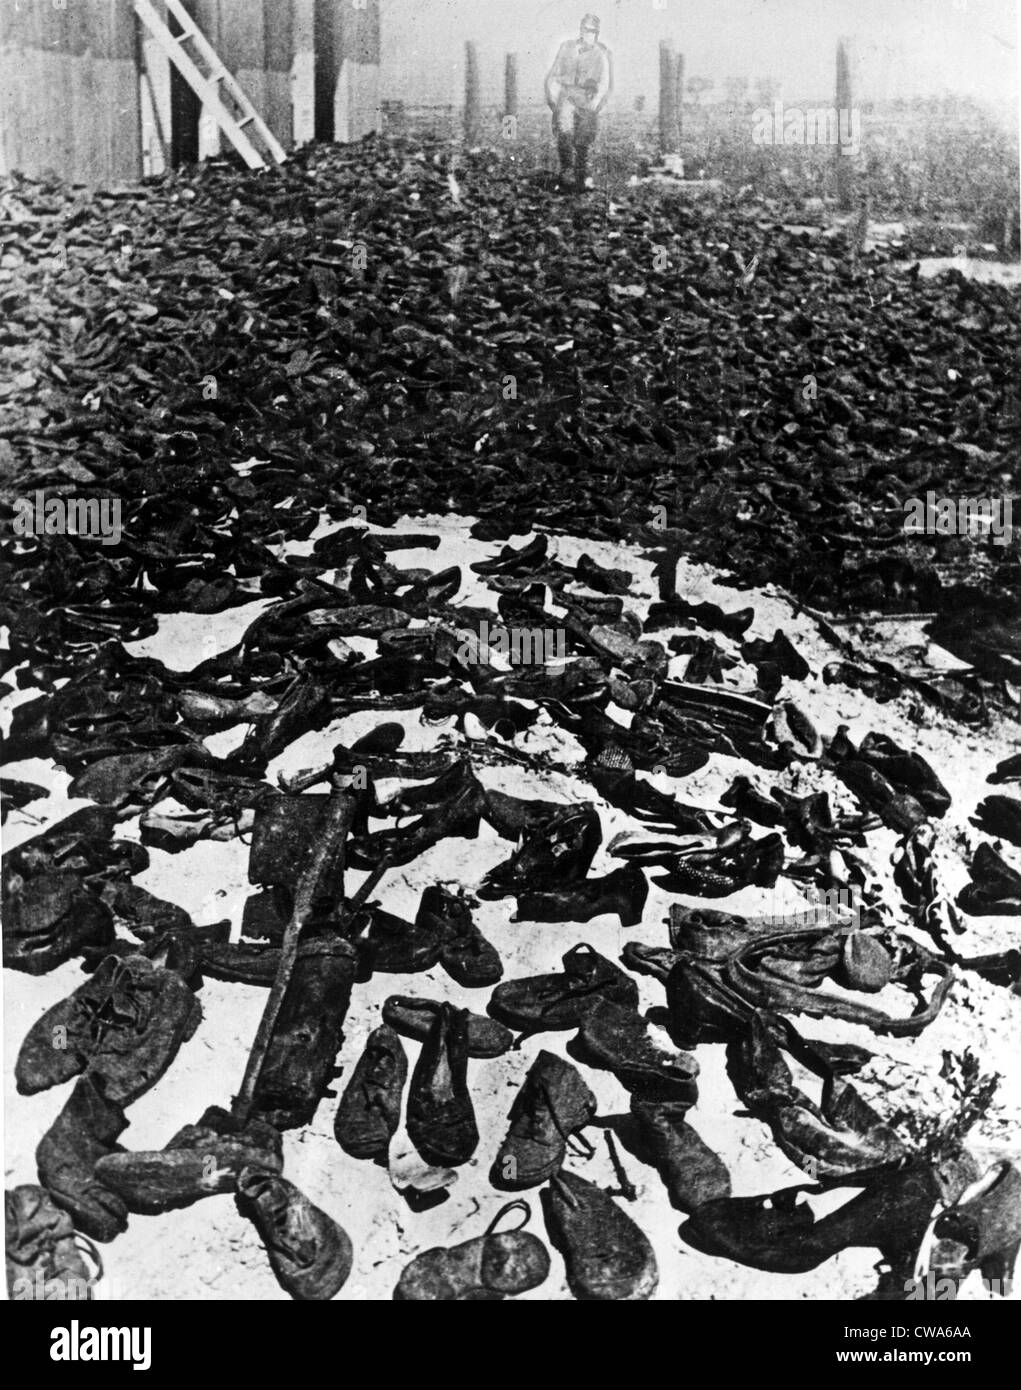 LUBLIN, Polen - Schuhe getragen von den Millionen von Männern, Frauen und Kinder, die durch die Gatess des Lagers Vernichtung marschiert. Stockfoto